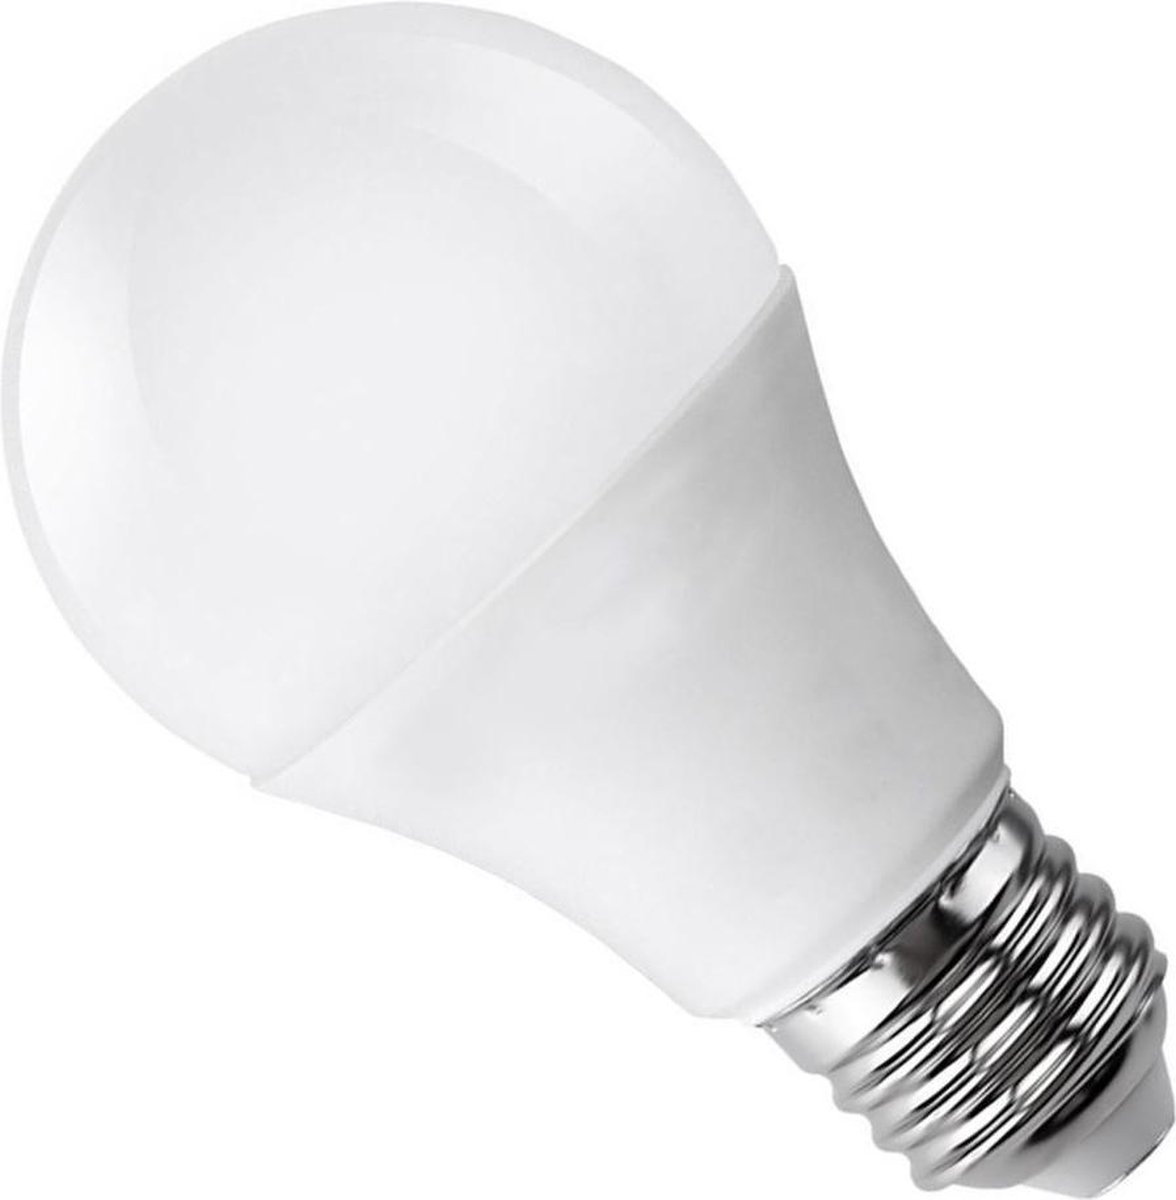 Cornwall Zeebrasem Poort E27 LED lamp 18W 220V A80 - Warm wit licht | bol.com